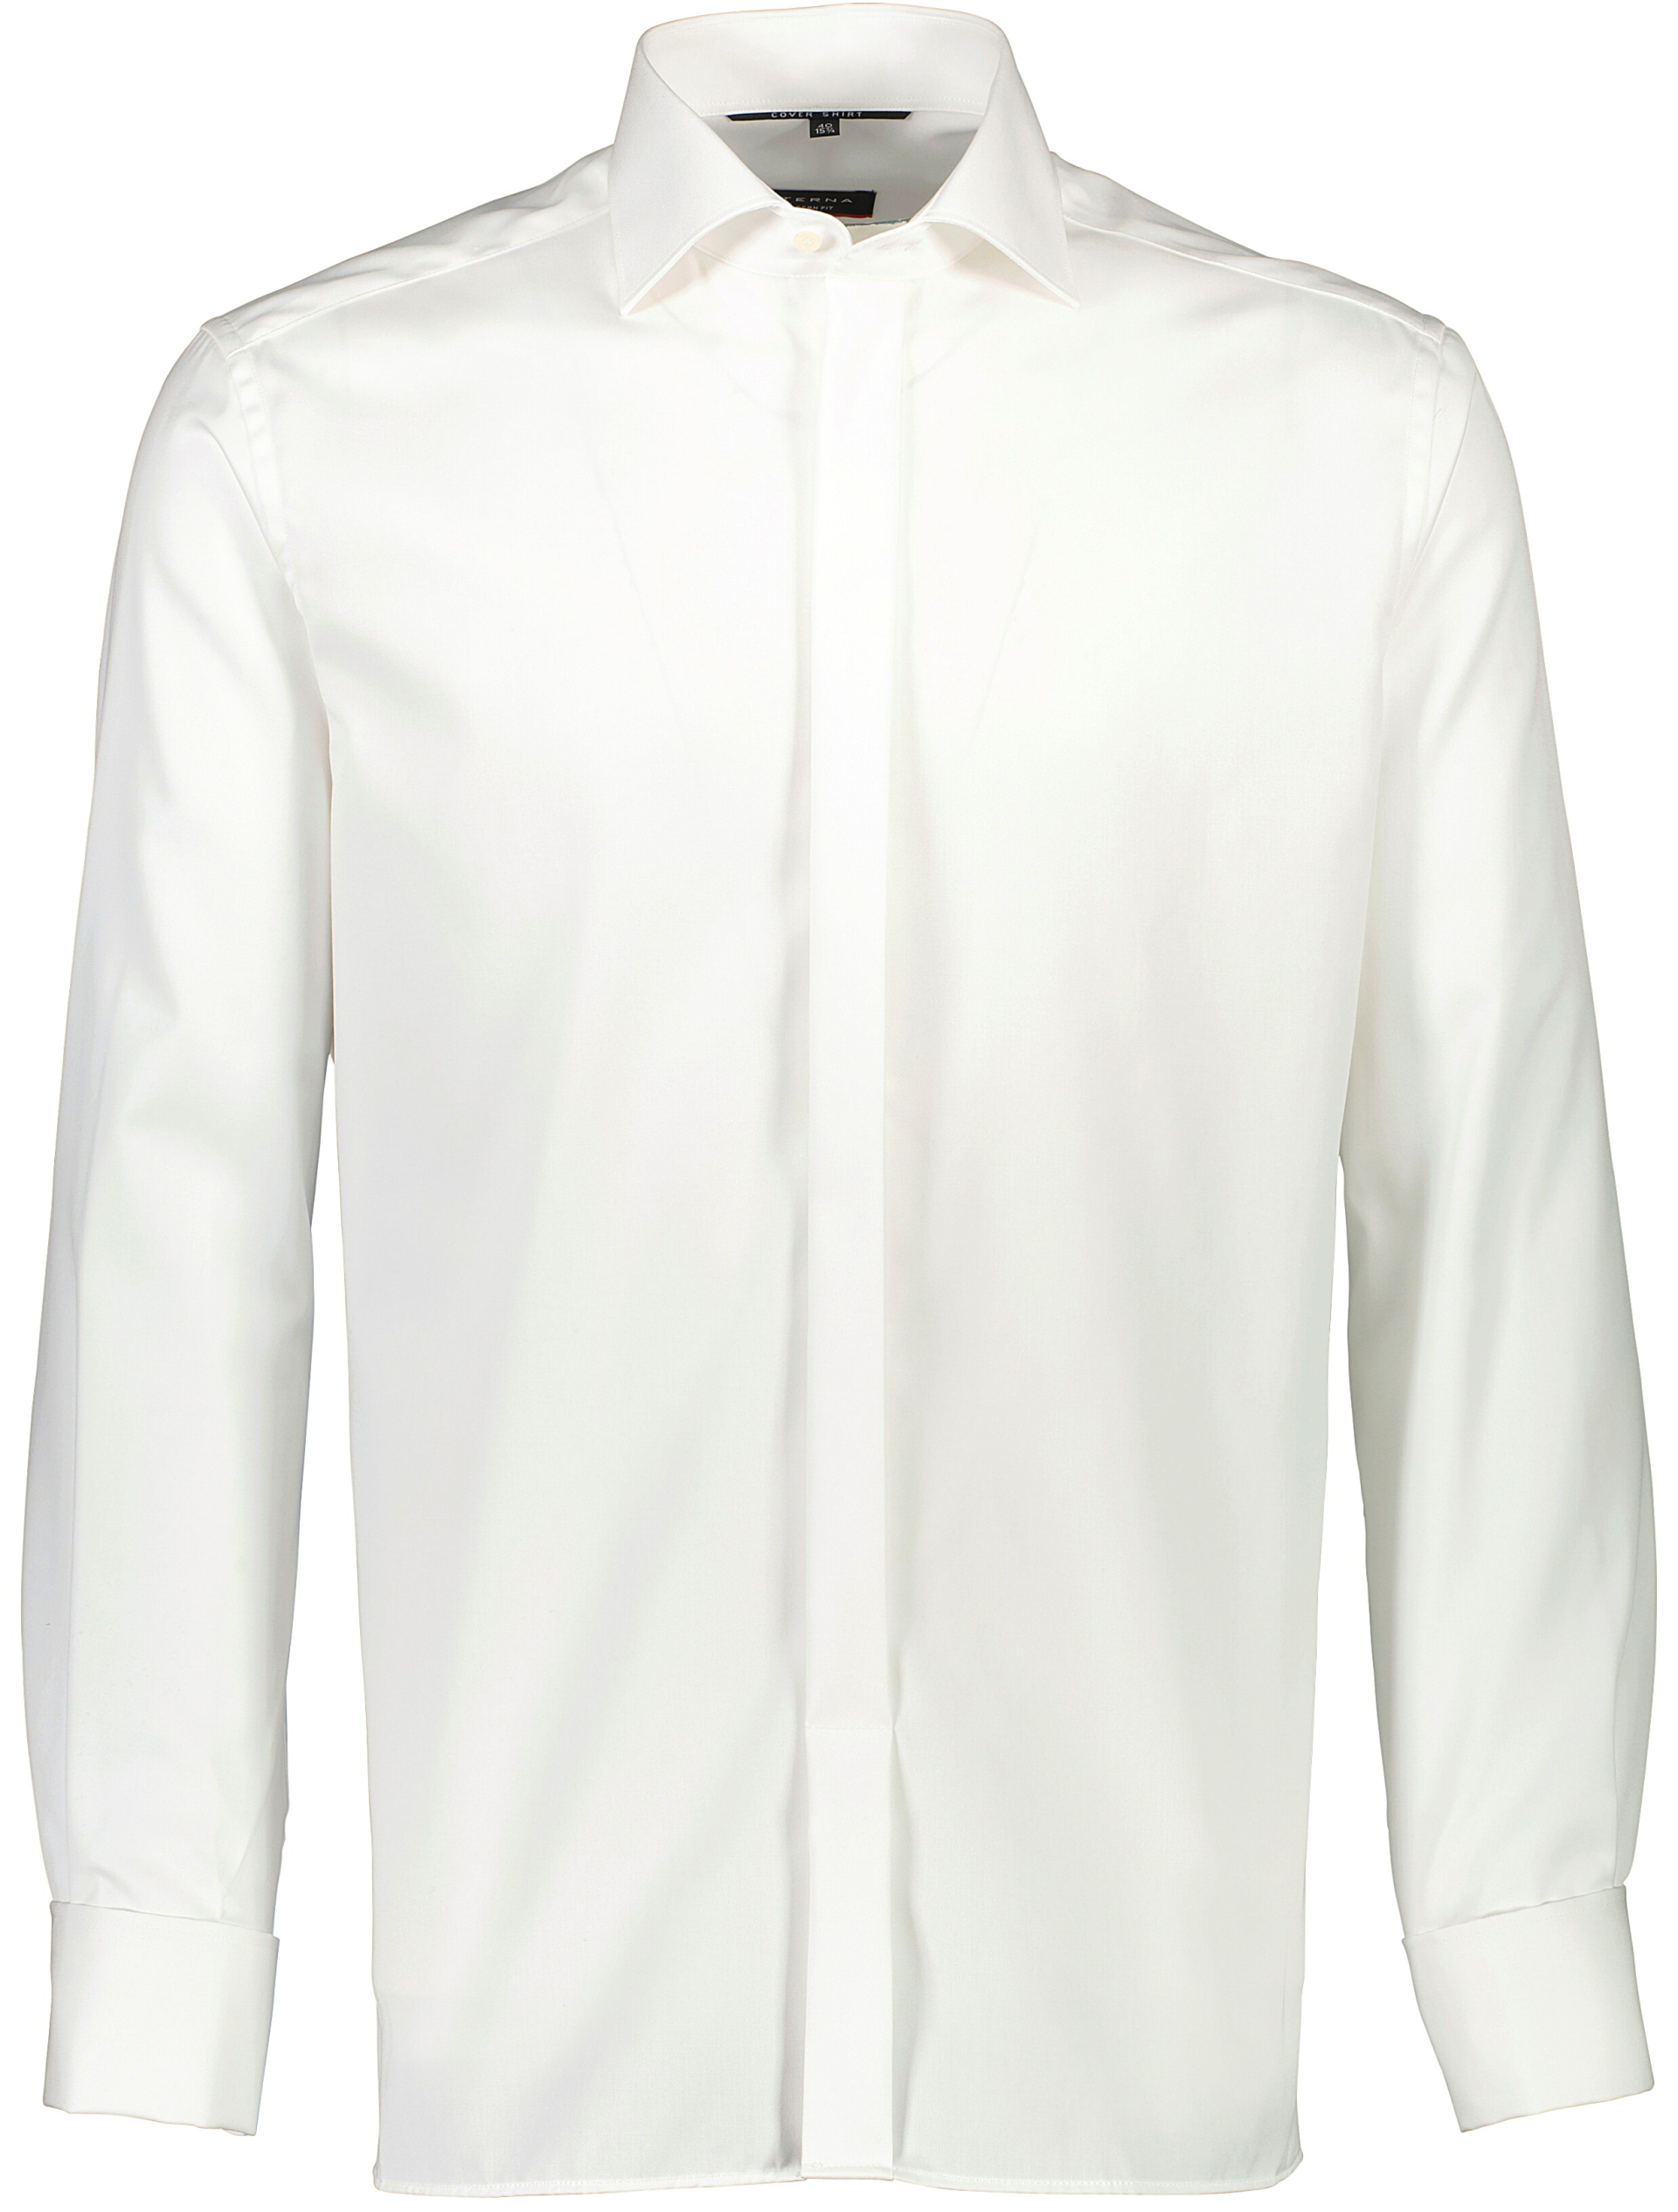 Eterna Business skjorte hvid / 21 off white